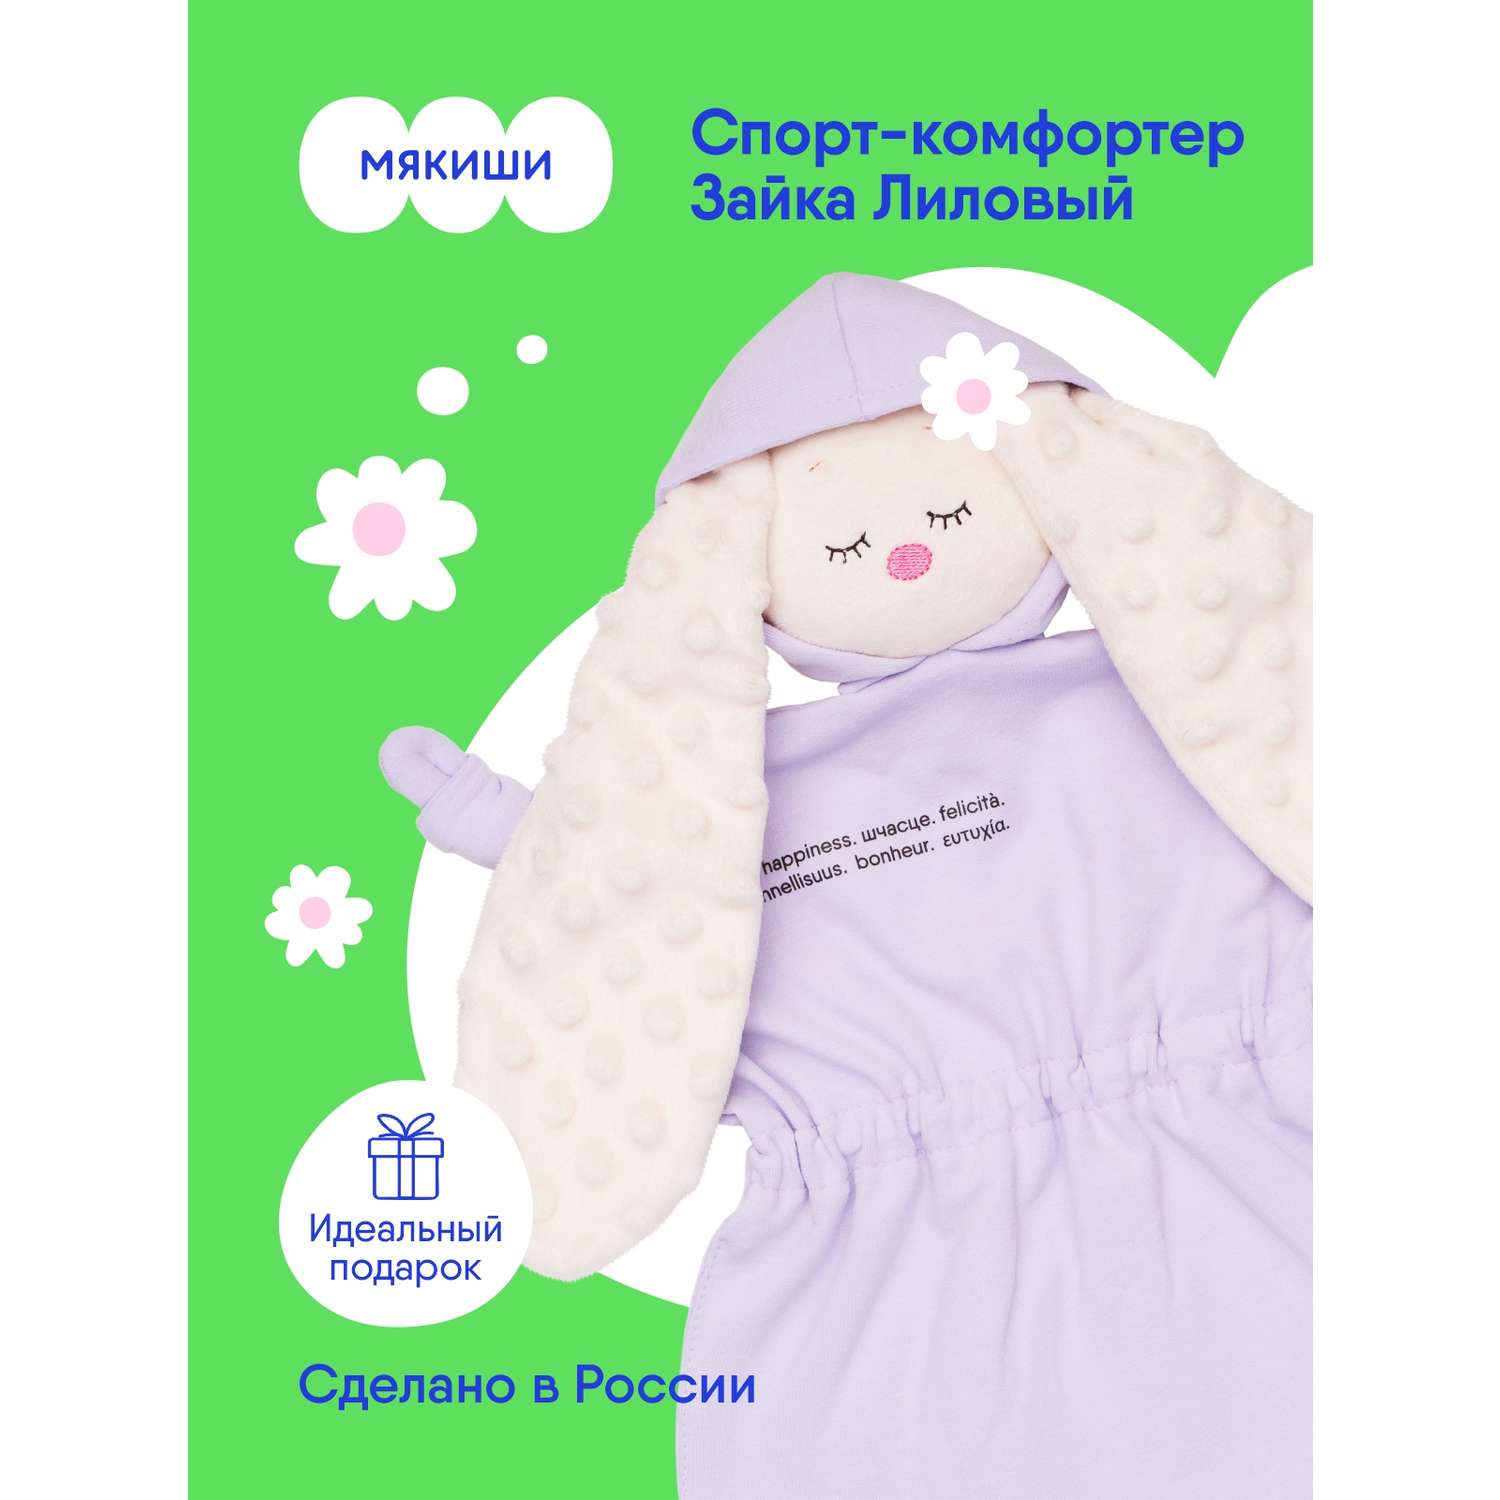 Игрушка-комфортер Мякиши для новорожденных Сплюша спорт Зайка Лиловый для сна обнимашка подарок на рождение - фото 1